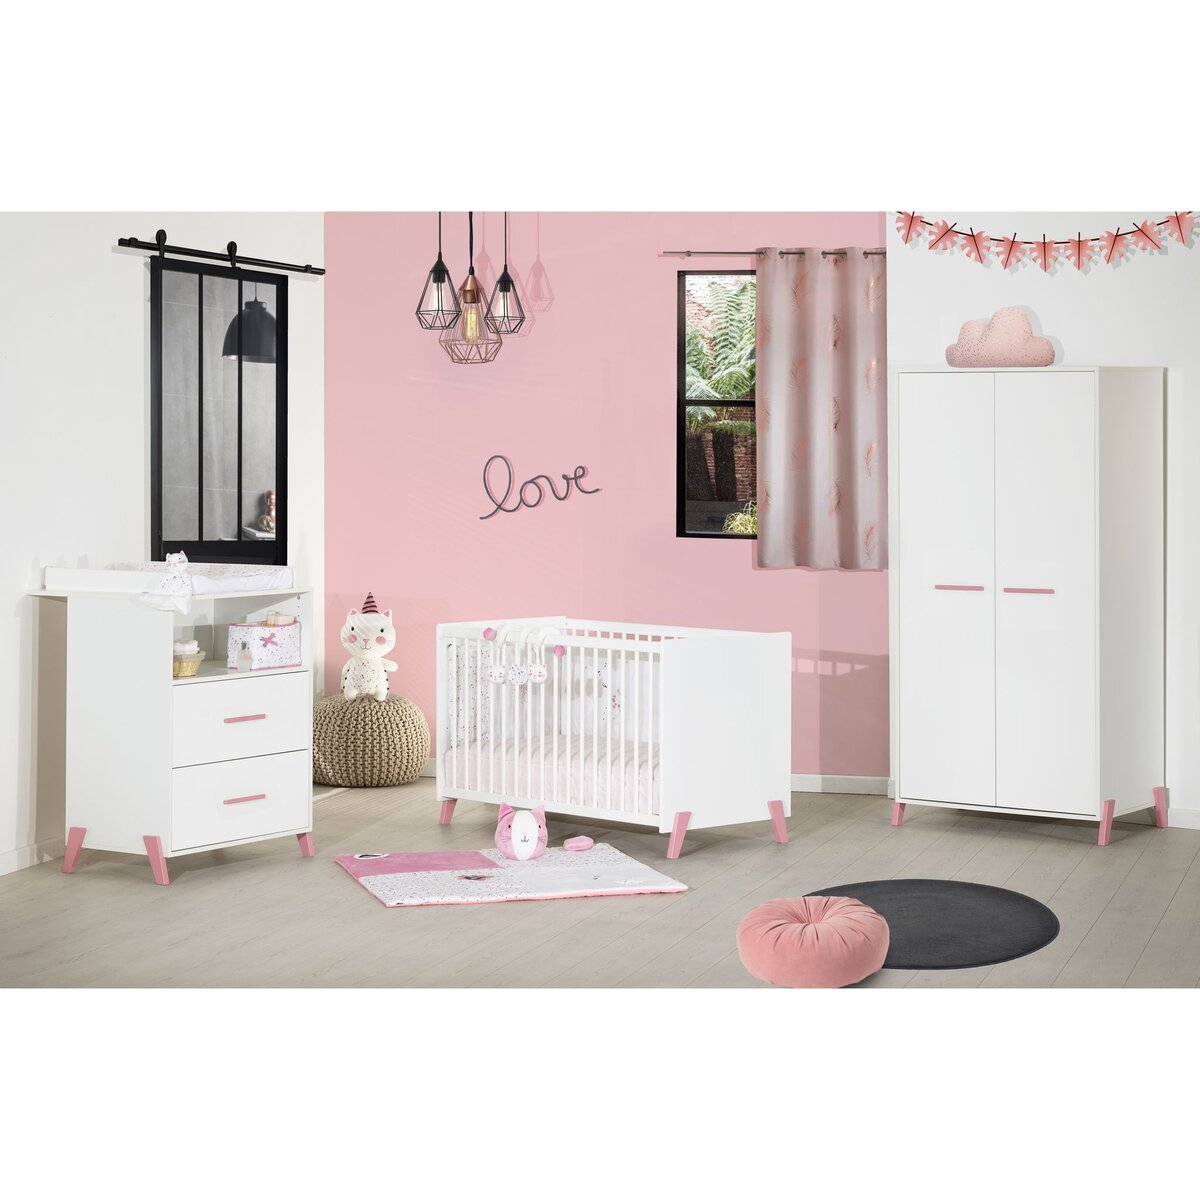 BABY PRICE Chambre bébé complète JOY, coloris rose